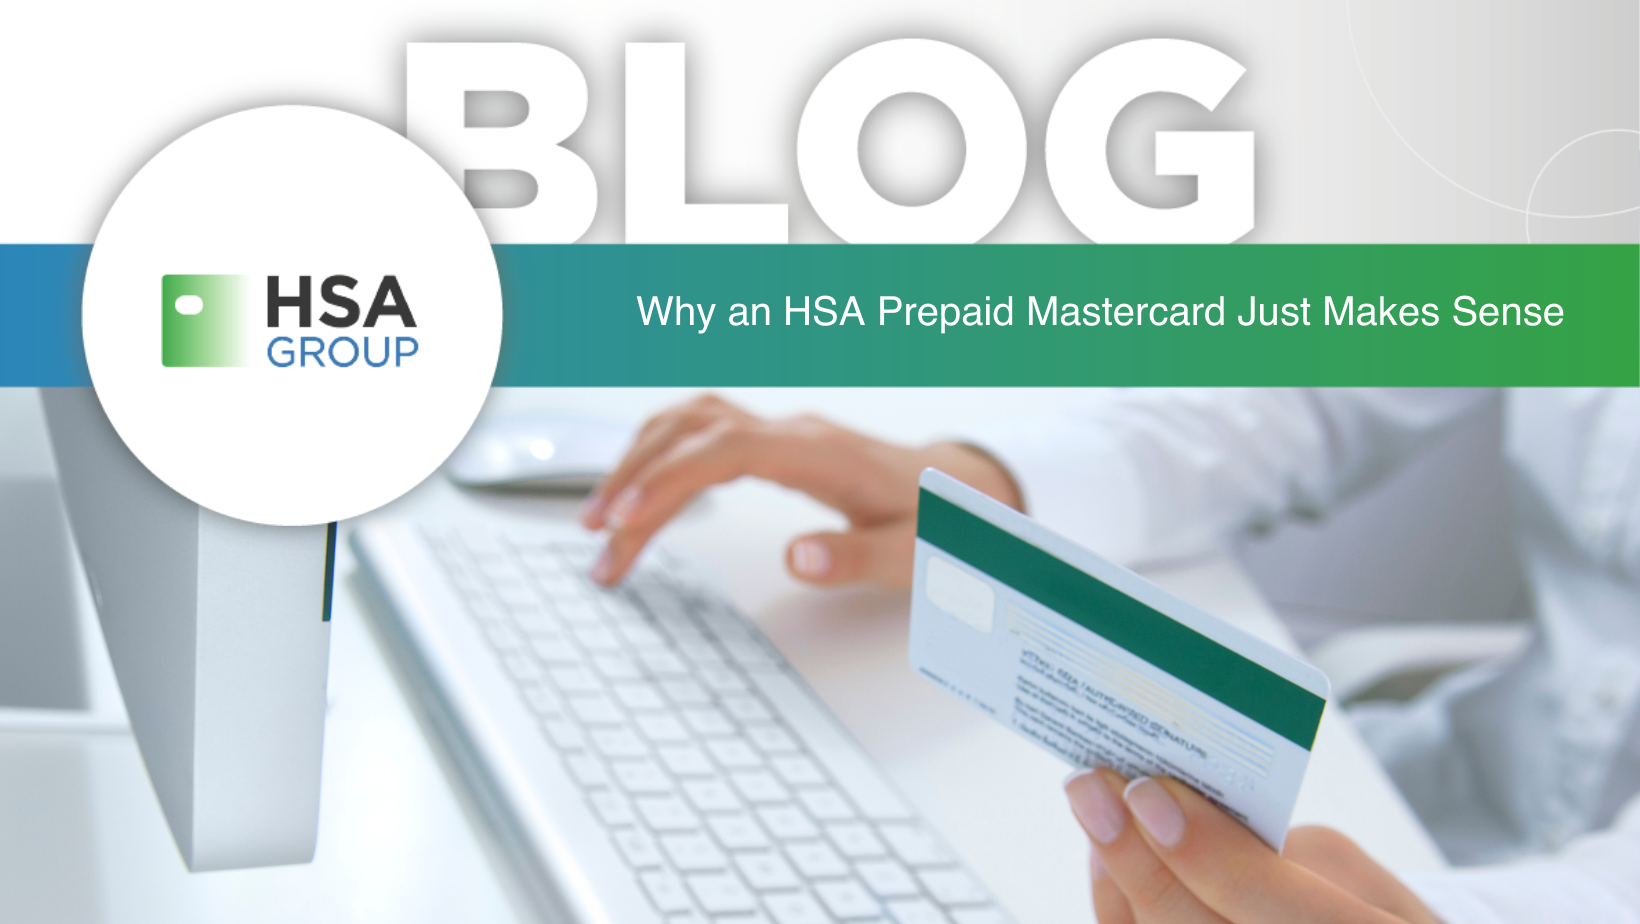 HSA Prepaid Mastercard